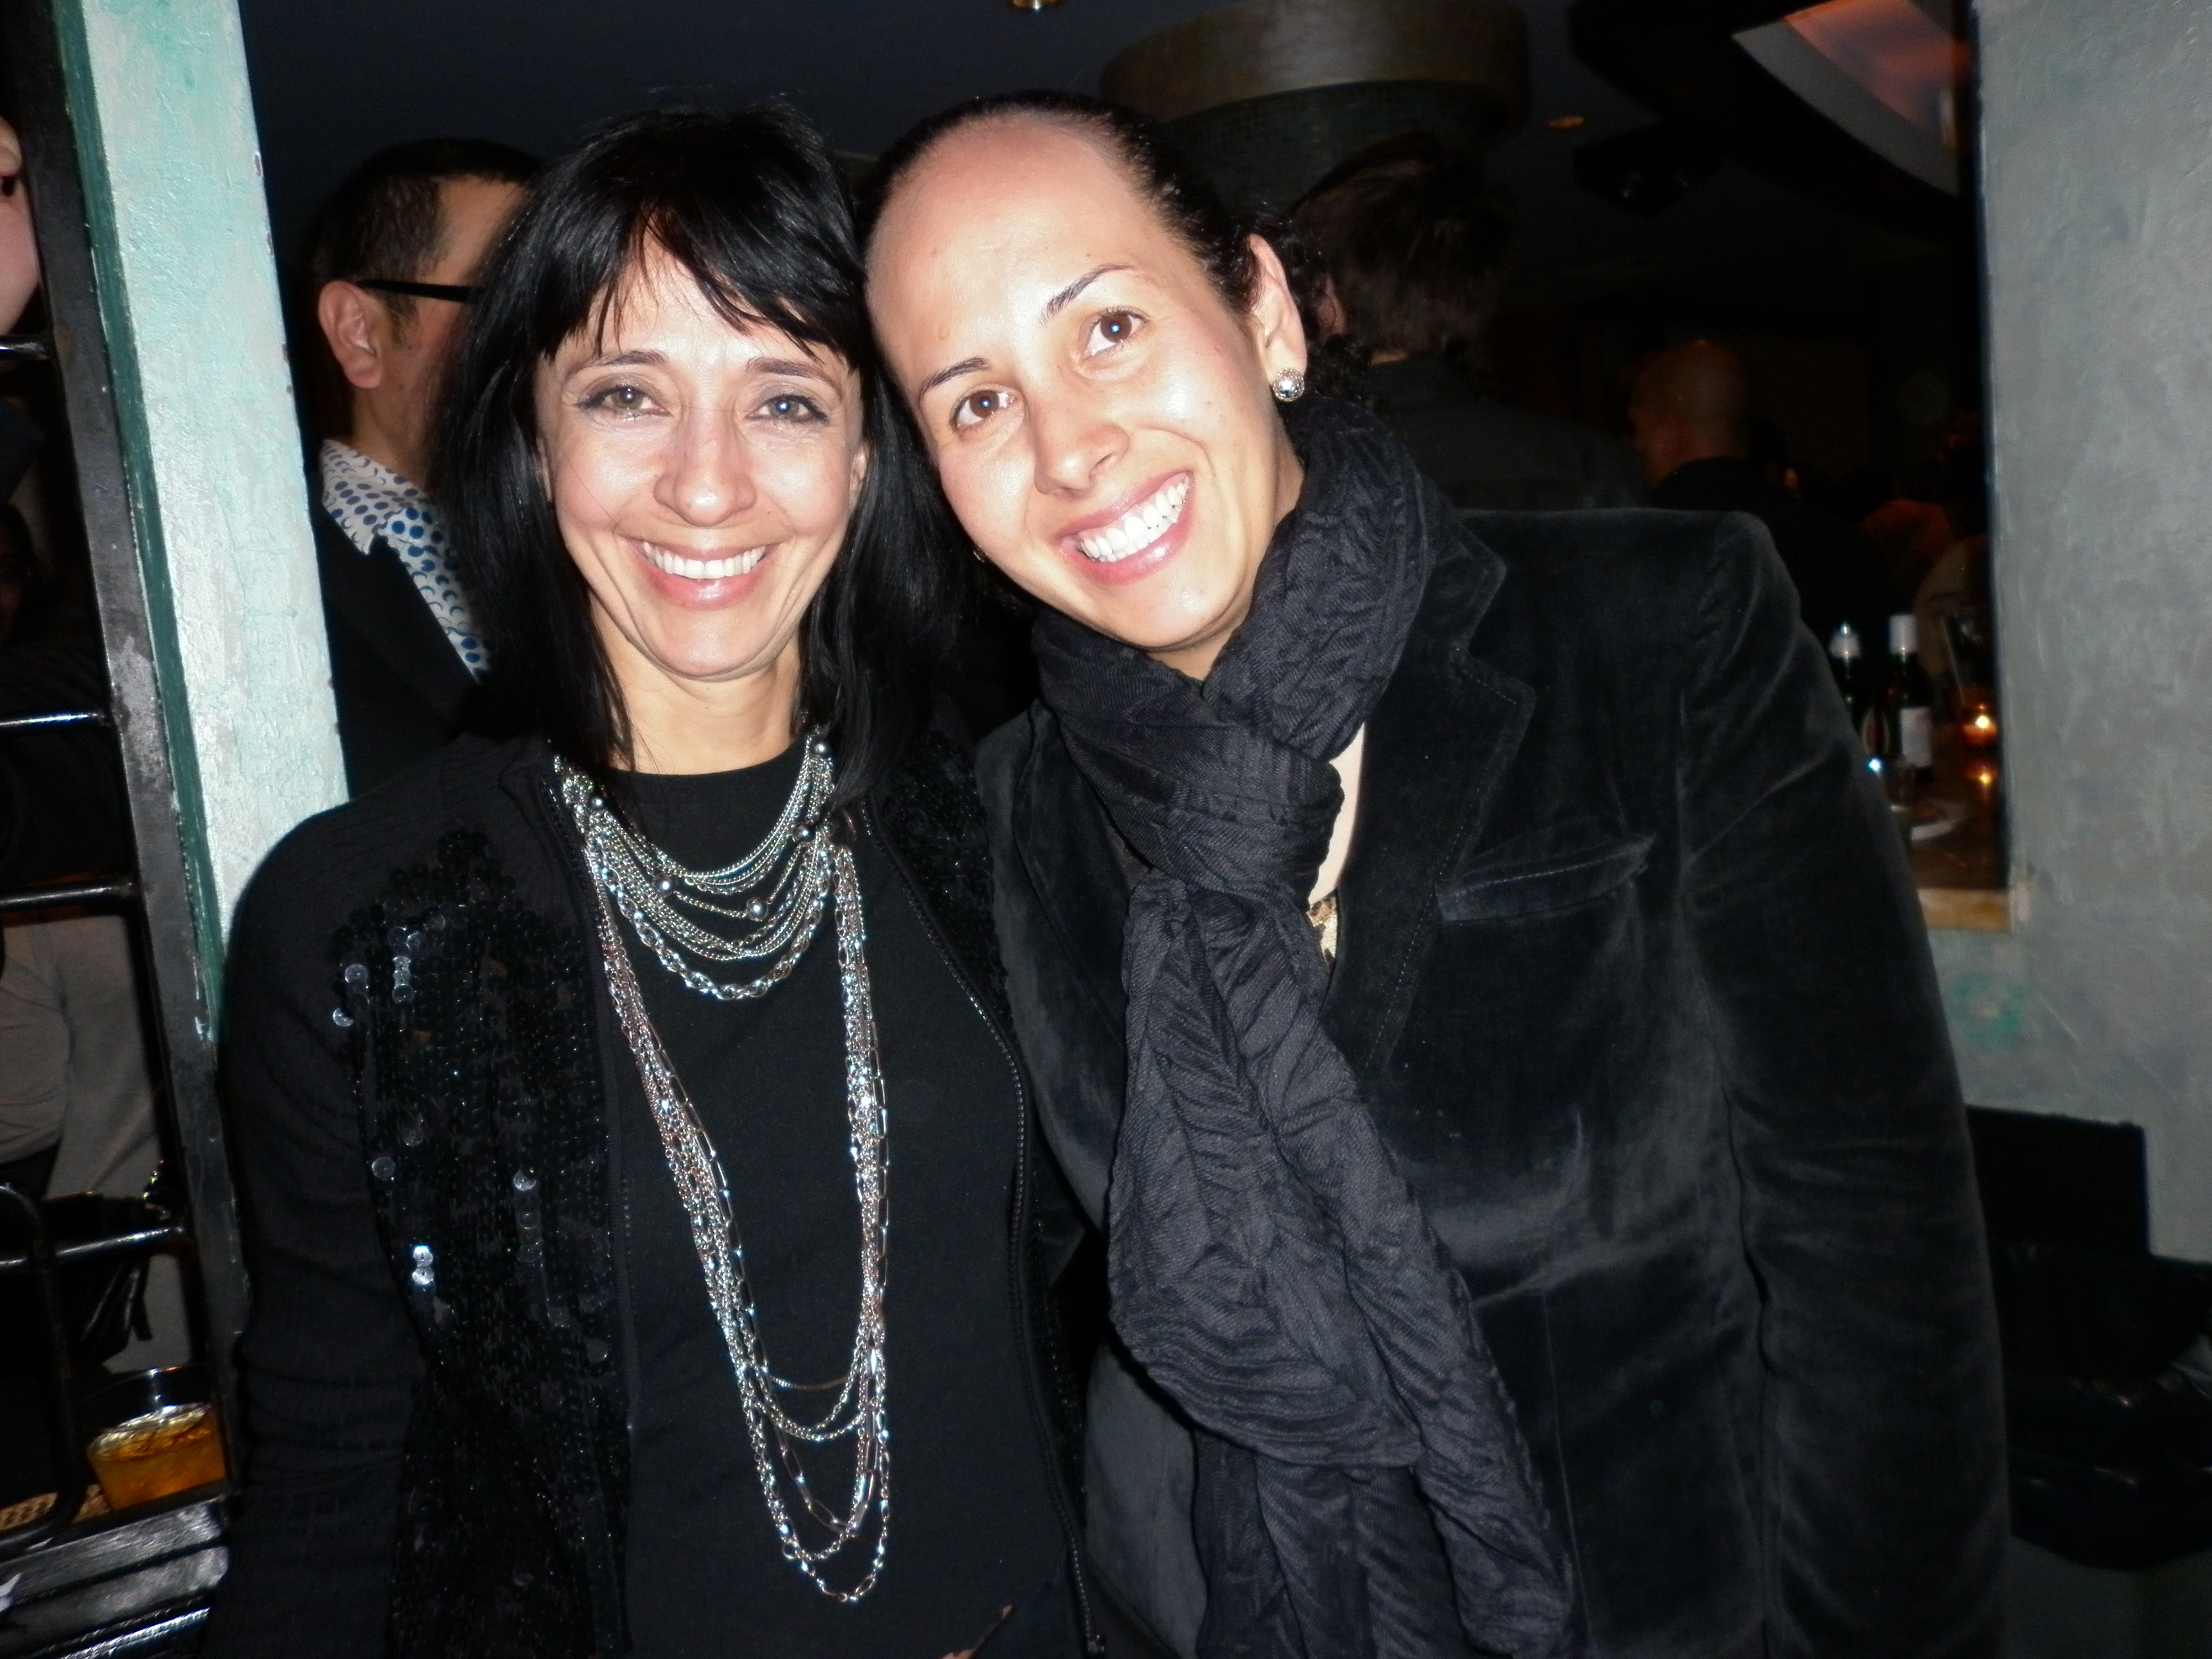 With Diana Vargas from the Havana Film Festival NY, USA (2011)